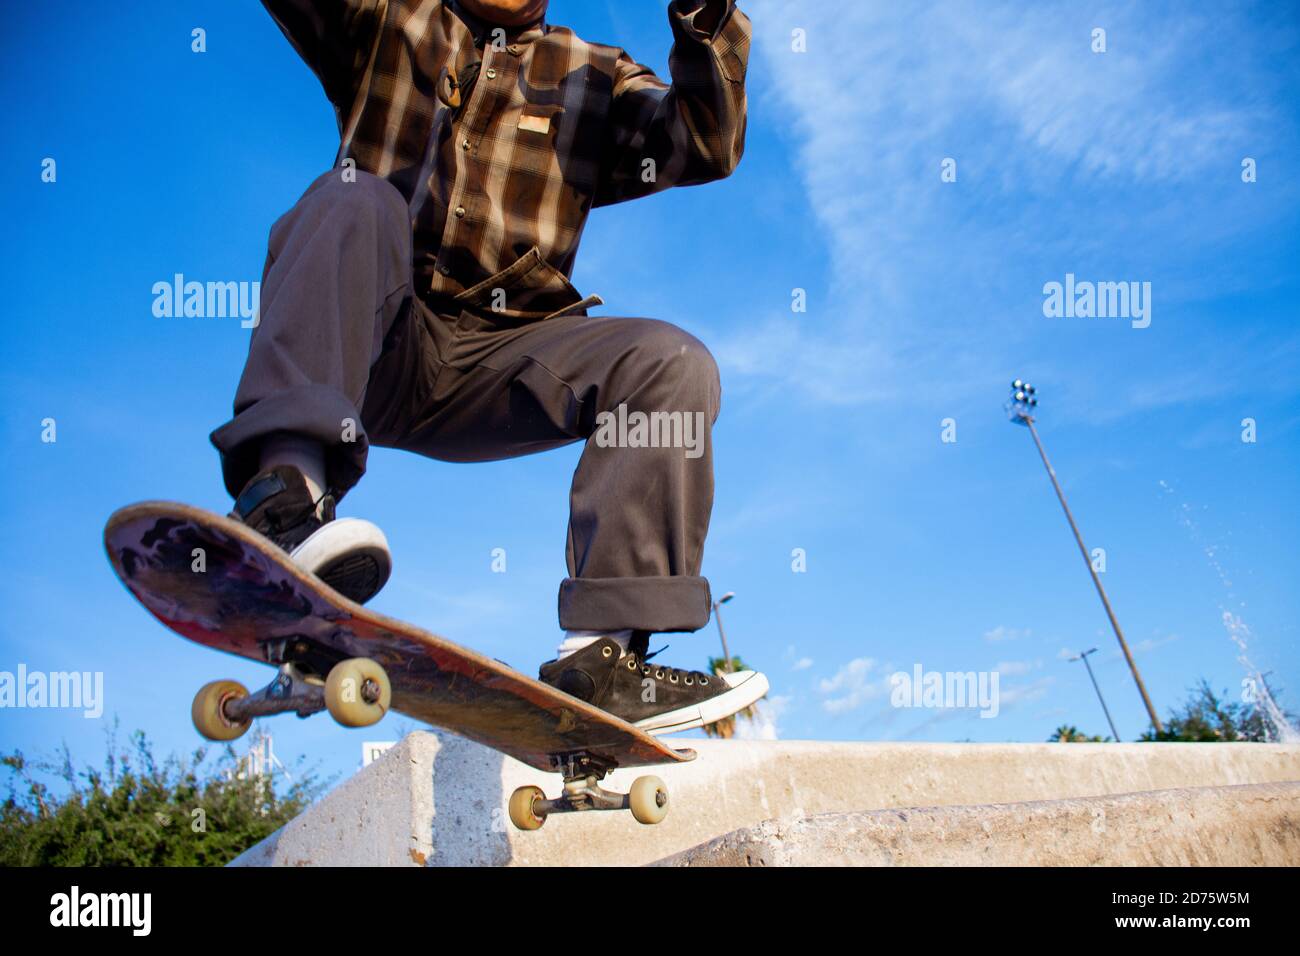 Homme sportif avec des vêtements amples longboard et faire des tours avec  son skate coloré et cool Photo Stock - Alamy